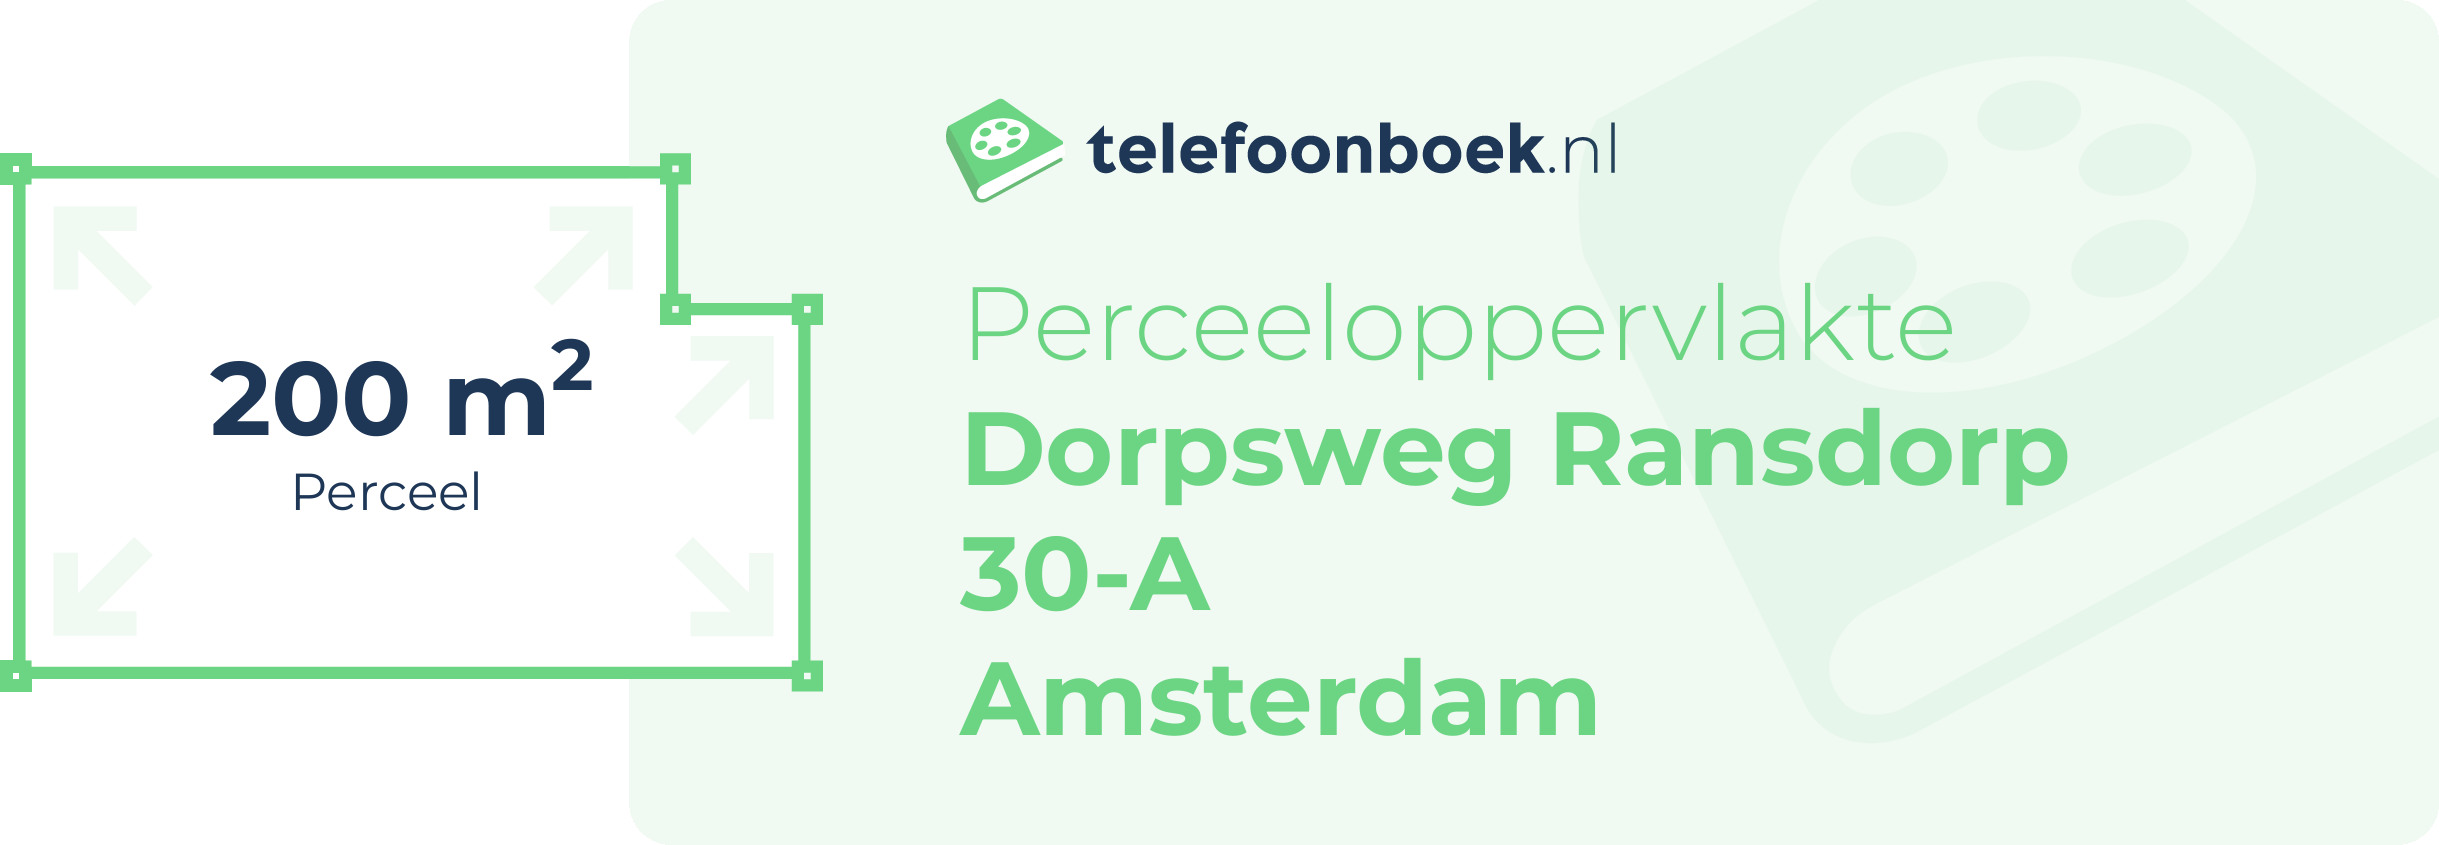 Perceeloppervlakte Dorpsweg Ransdorp 30-A Amsterdam